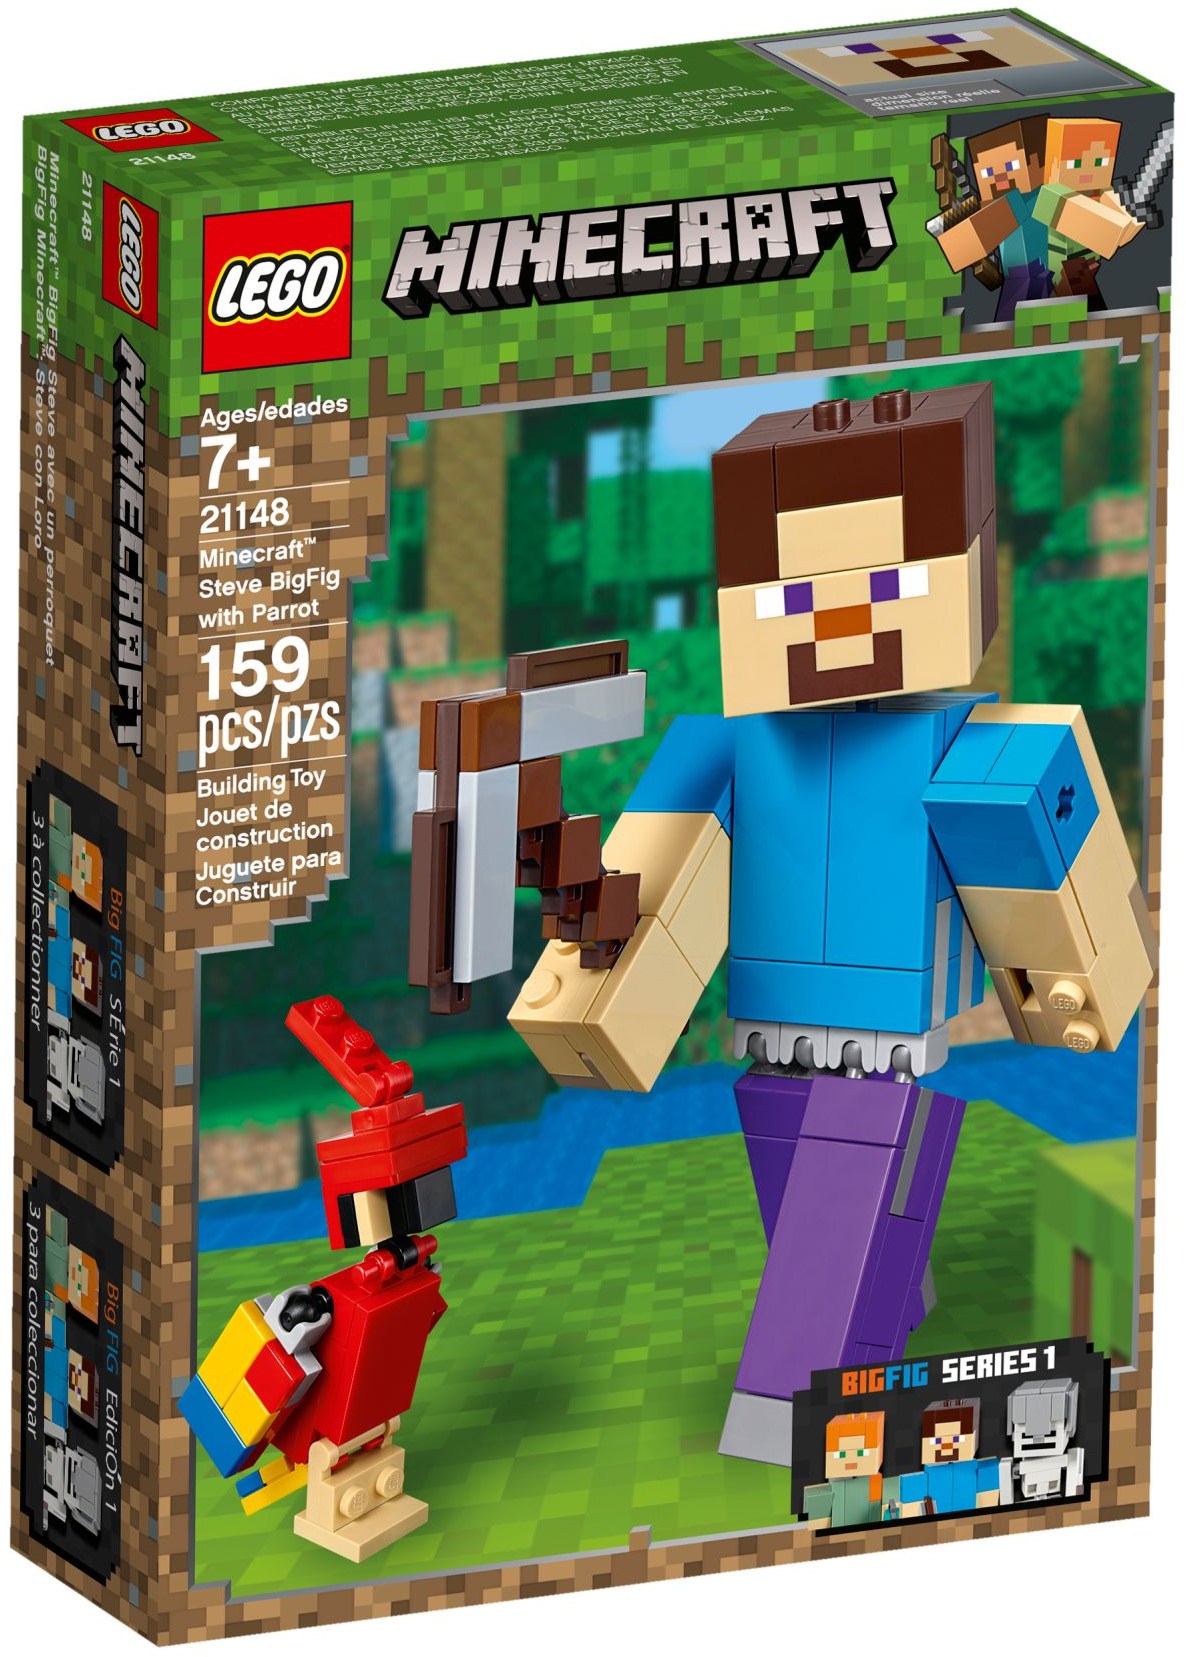 LEGO Minecraft - Steve mit Schwein - Figur Minifig Pig Melonenplantage  21138